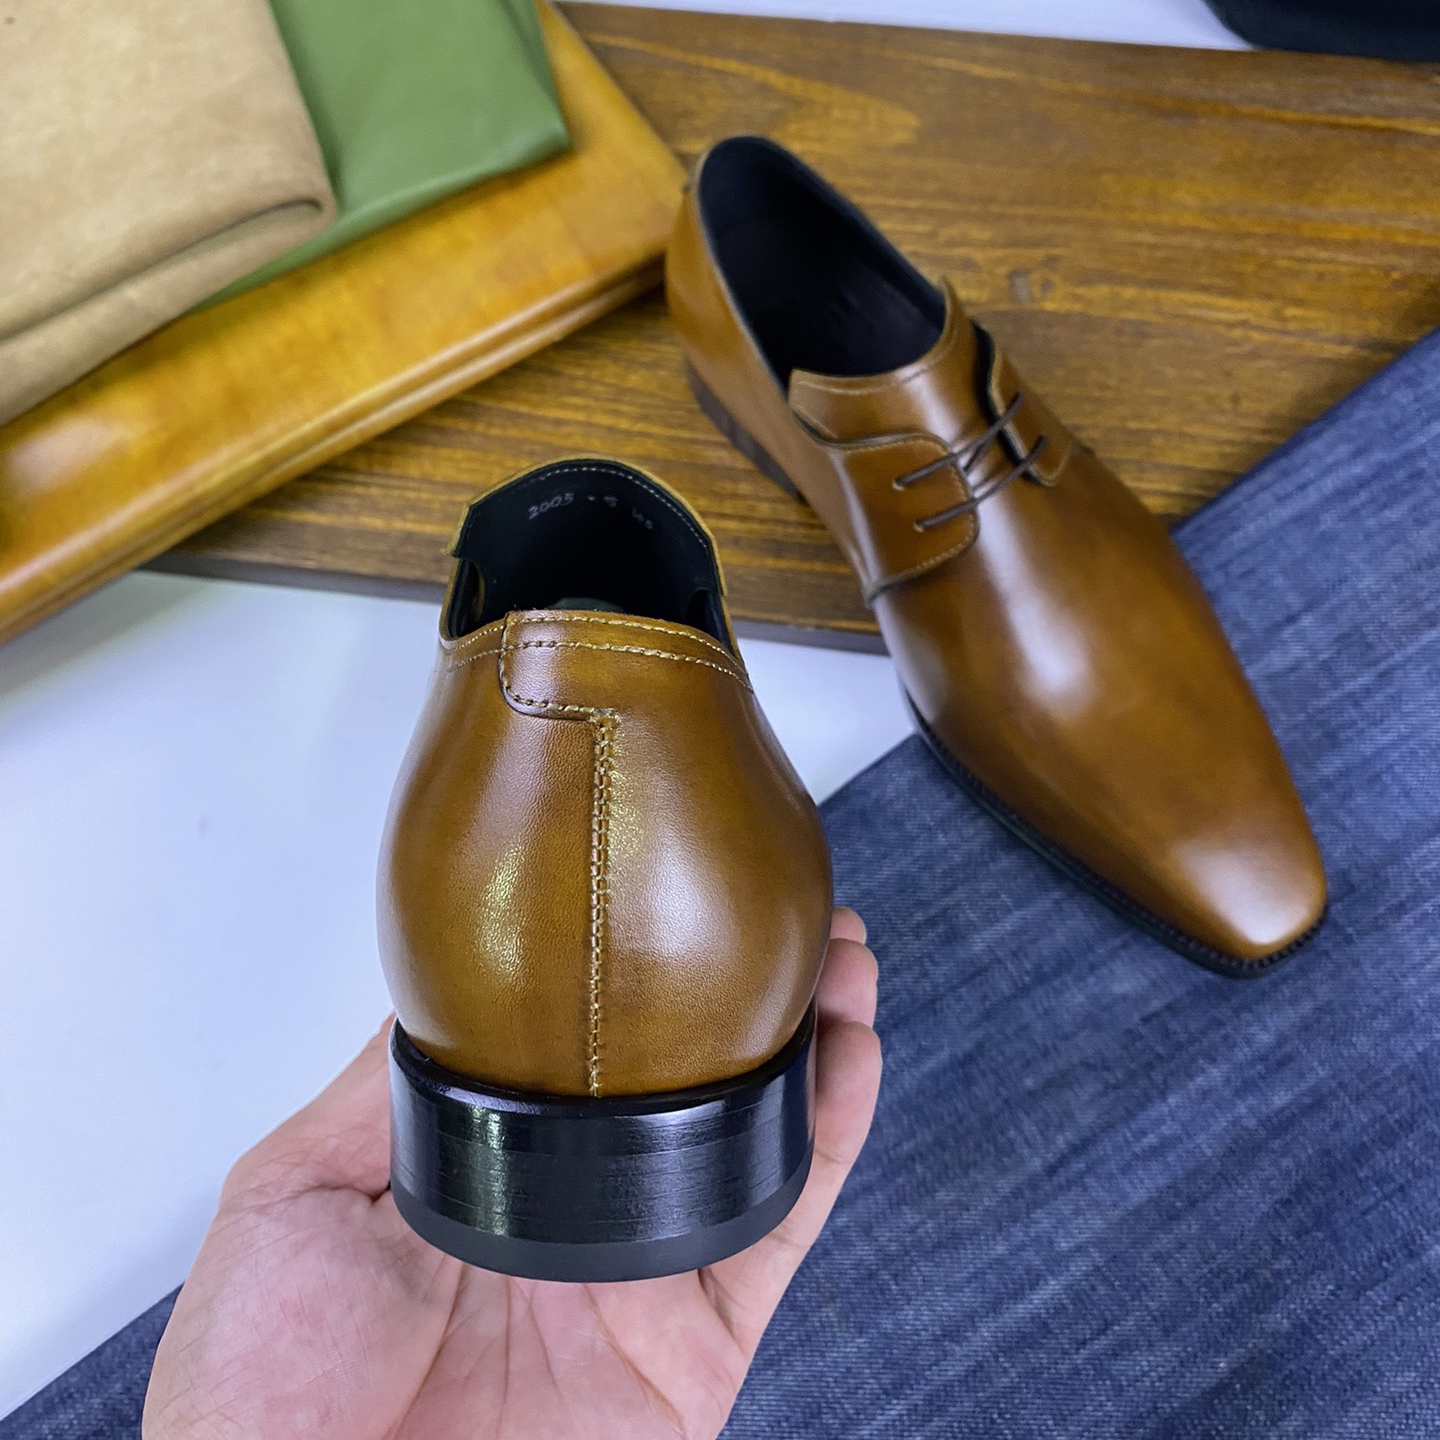 chaussures en cuir Chaussures Oxford Chaussures en cuir pour hommes faites à la main de haute qualité Chaussures à lacets décontractées pour hommes Semelles en cuir pour les déplacements et les loisirs